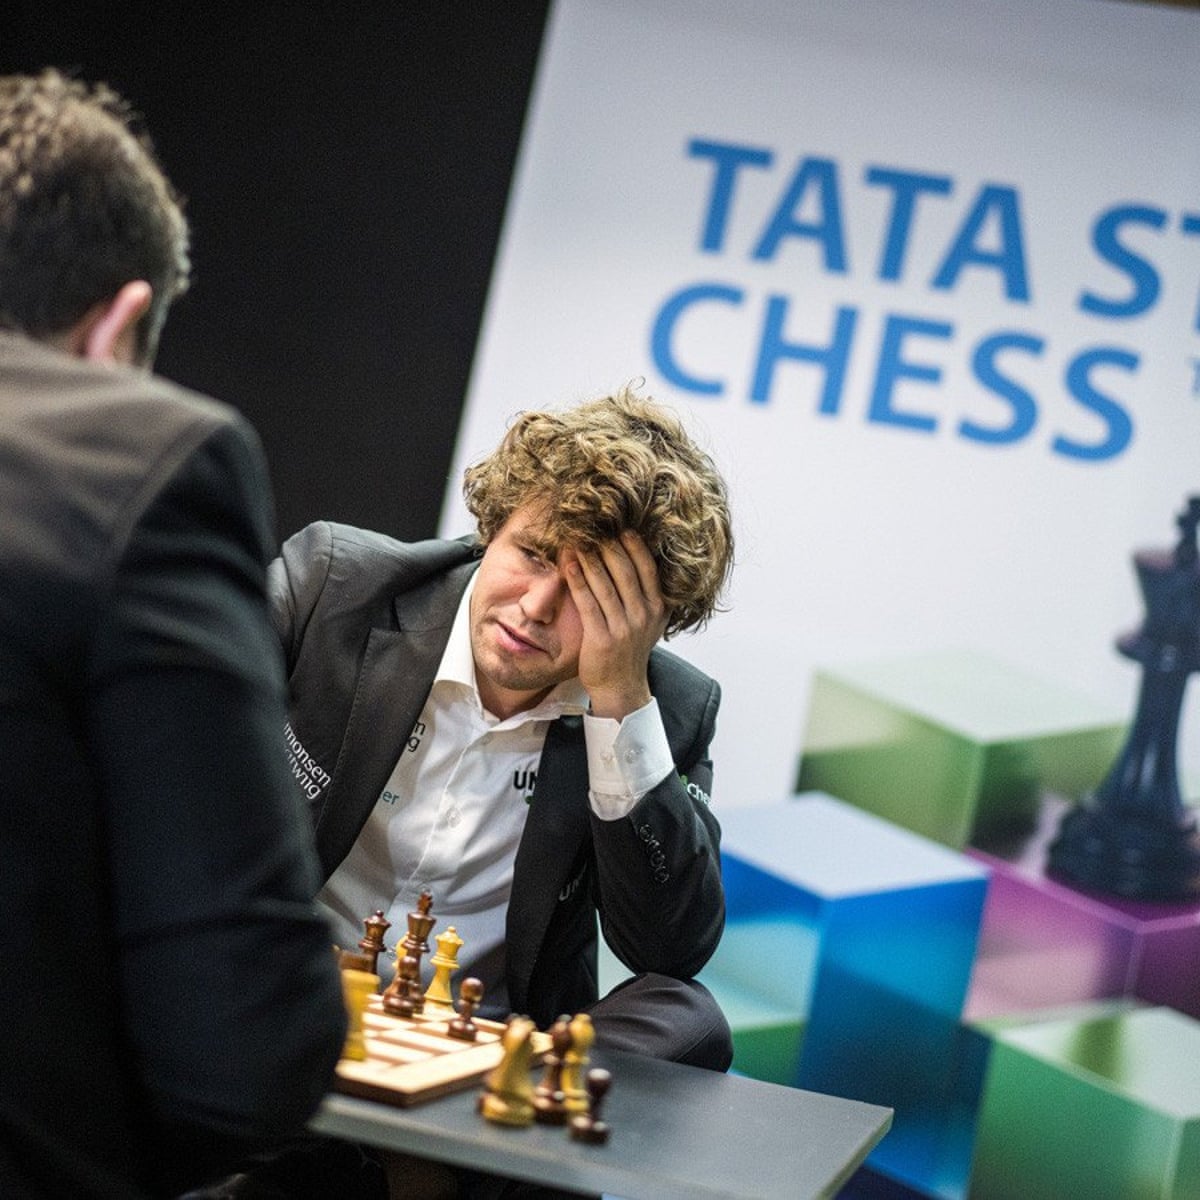 Tata Steel Chess 2023, Round 8